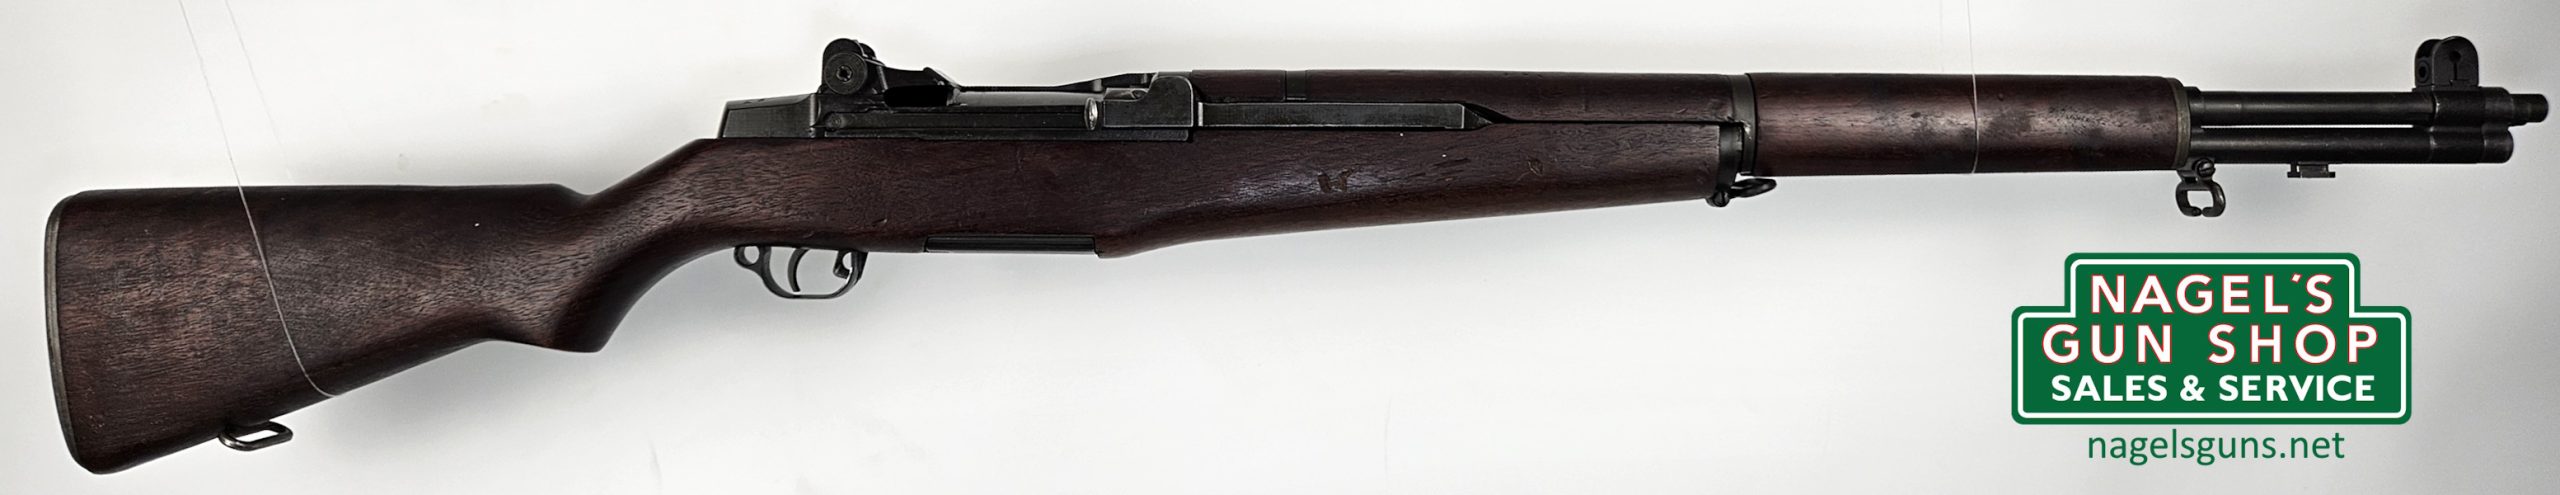 H&R Arms Co. M1 Garand 30-06 Rifle